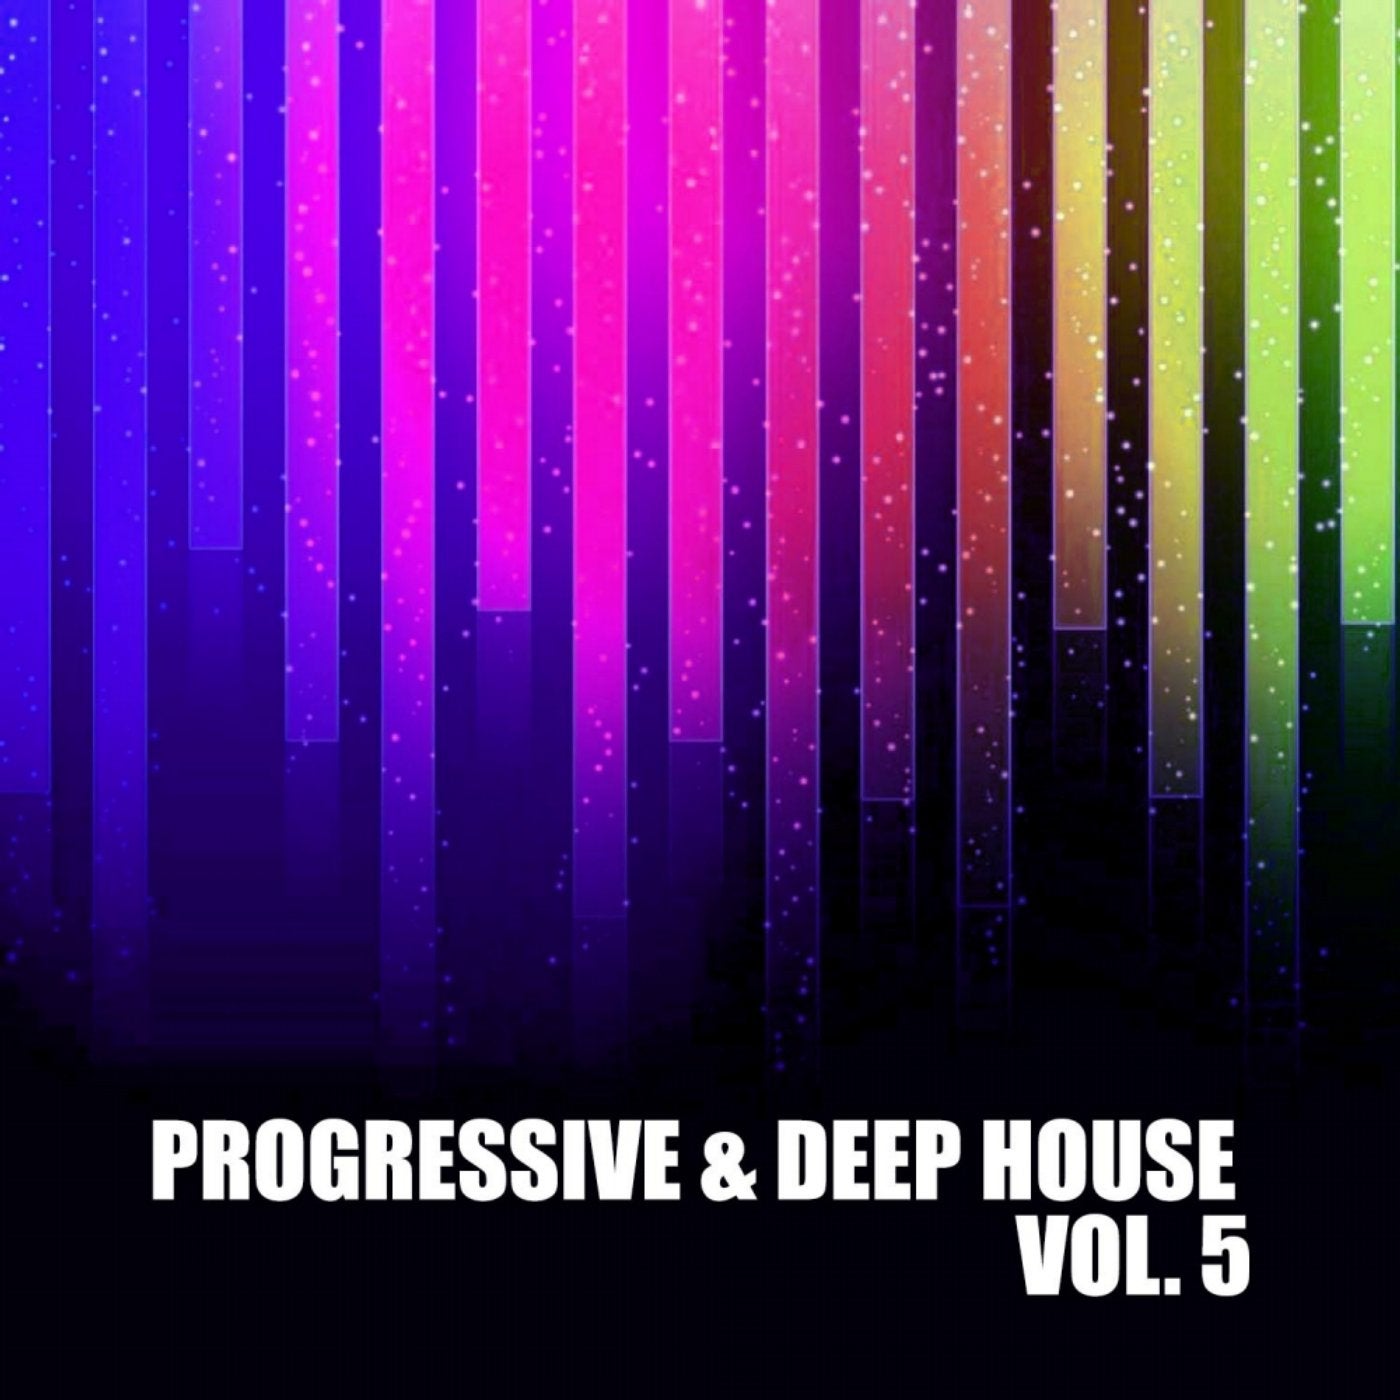 Progressive & Deep House, Vol. 5